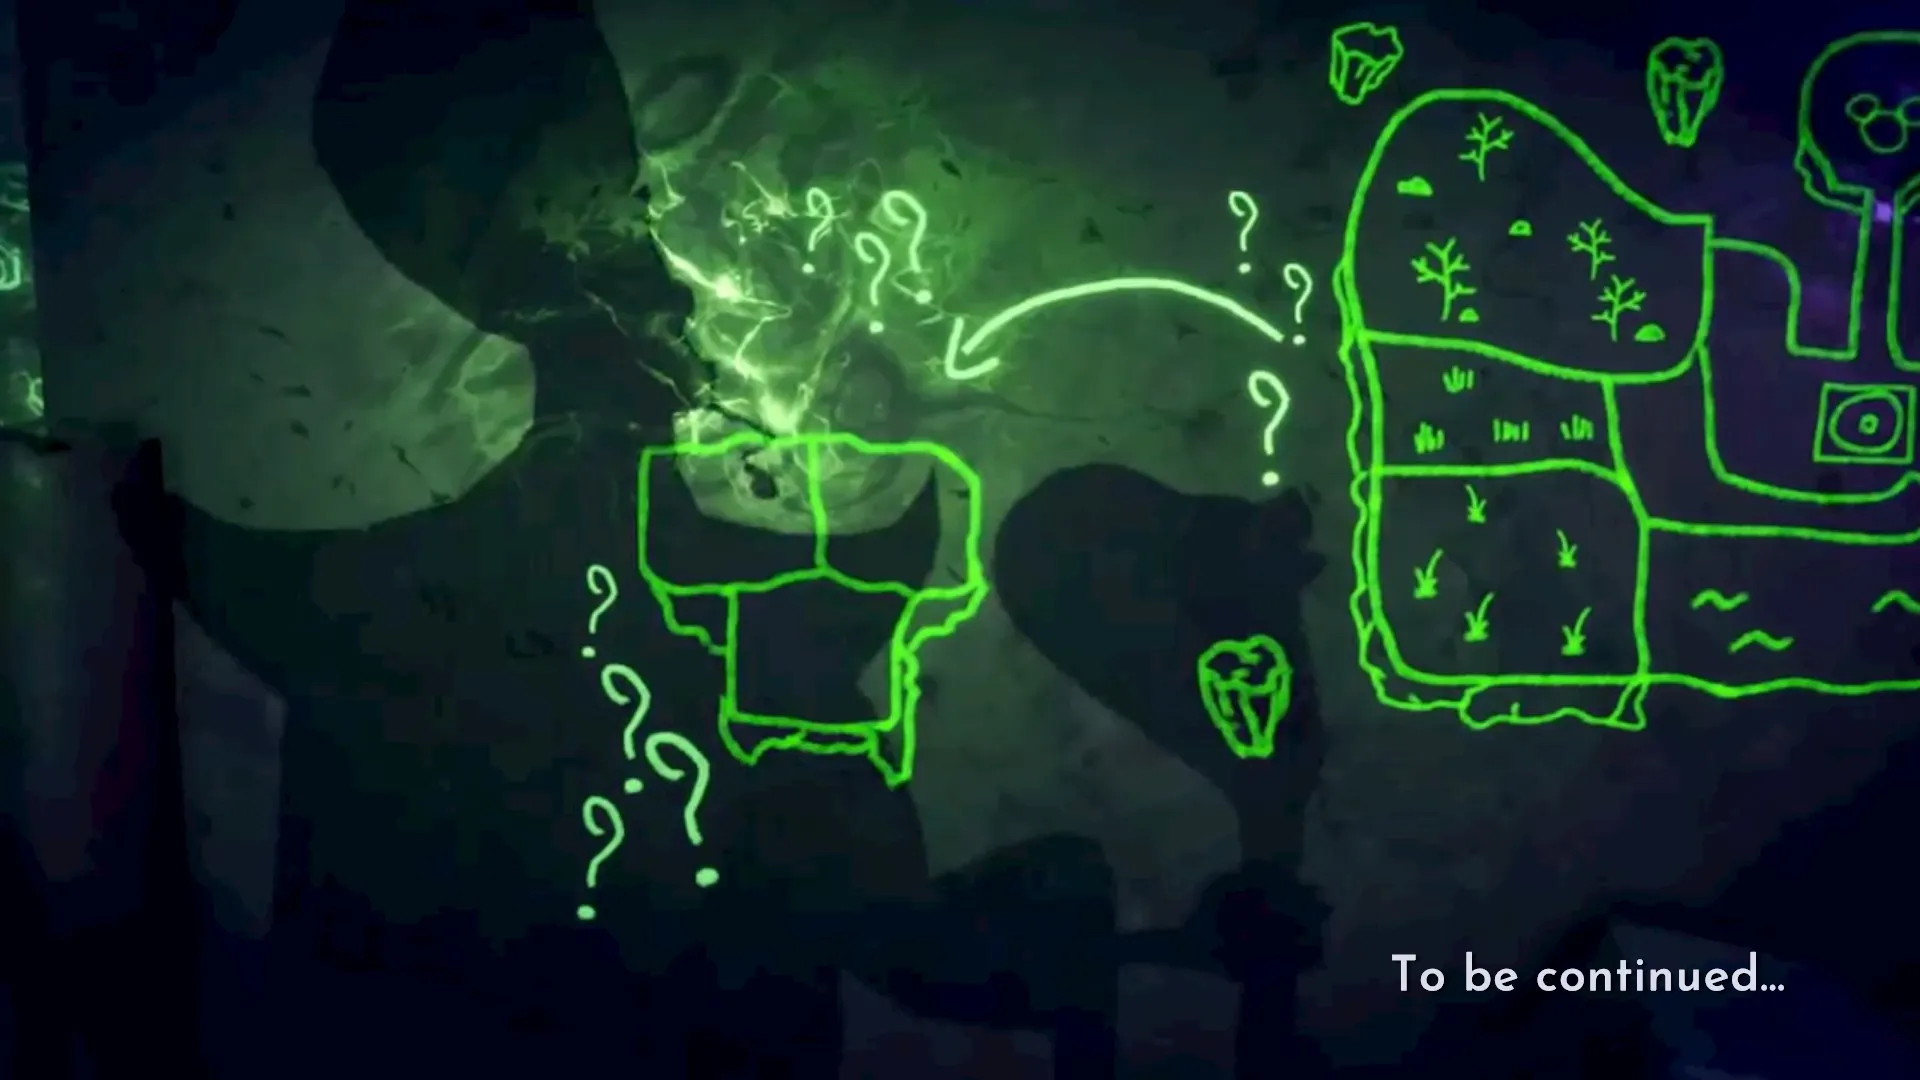 แผนที่ของ Dreamlight Valley ที่วาดด้วยสีเขียวสดใสพร้อมเงาของ Jafar ปรากฏขึ้นเหนือมัน